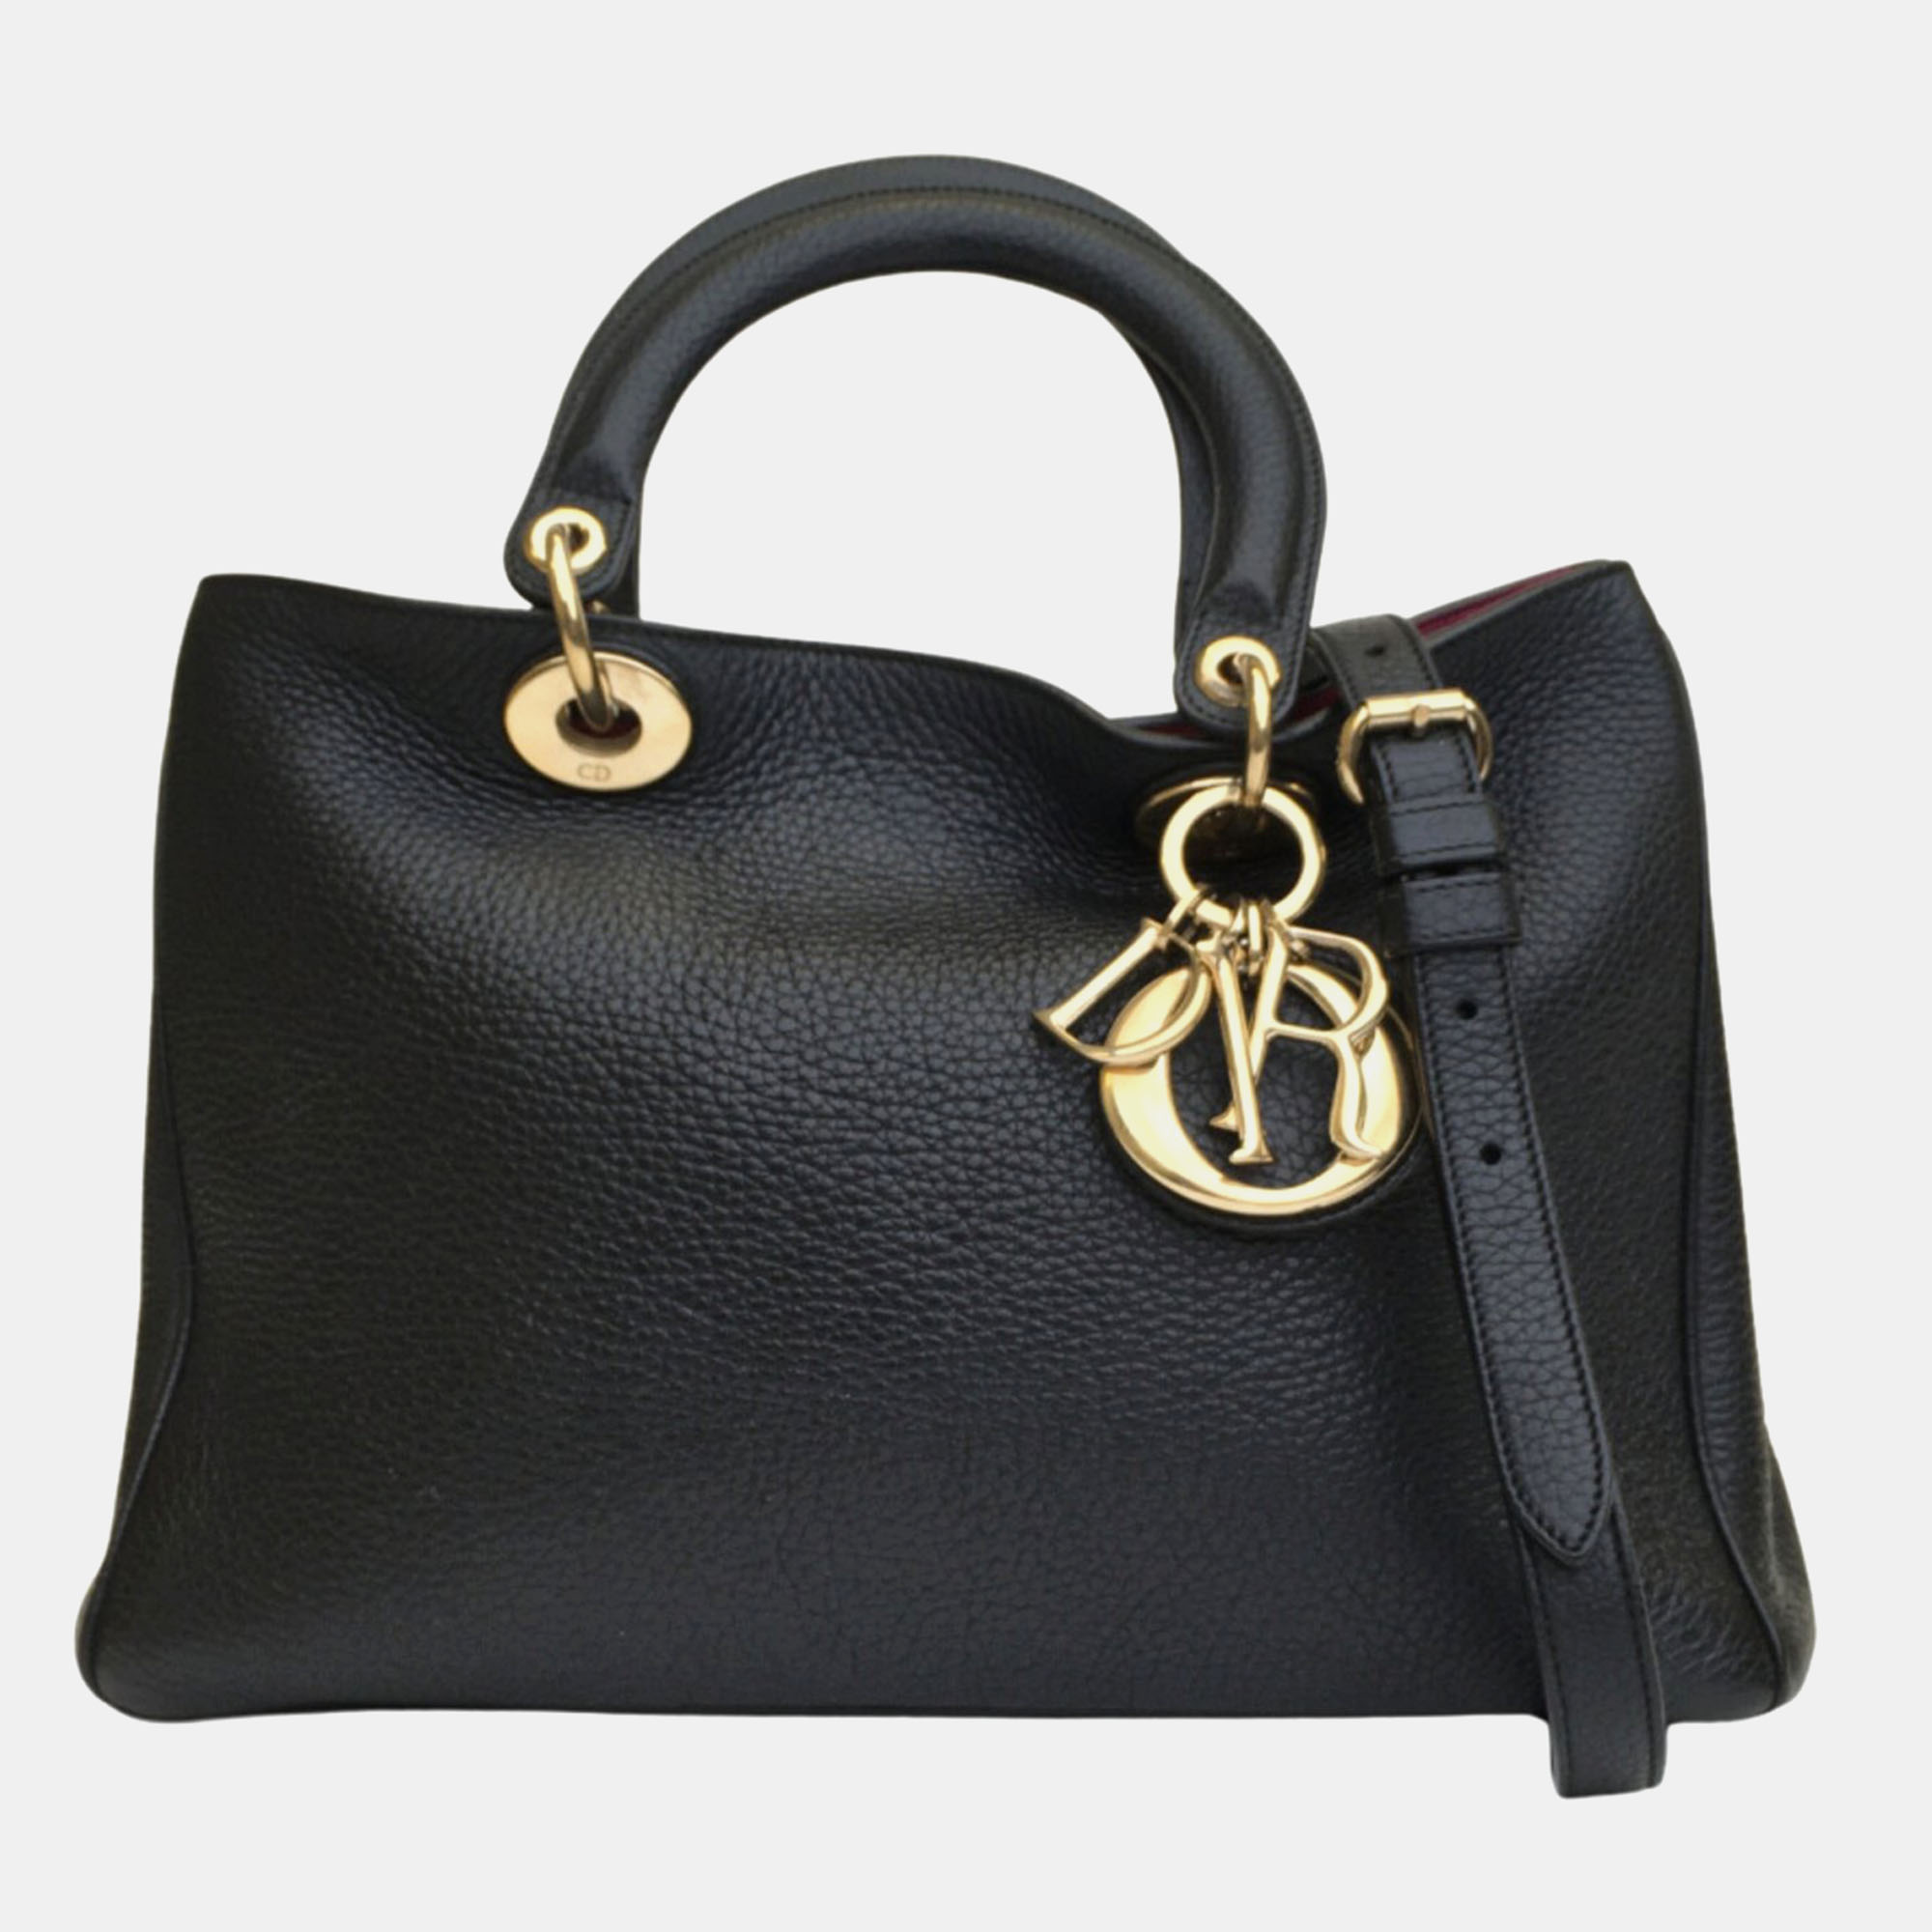 Dior black leather medium diorissimo tote bag